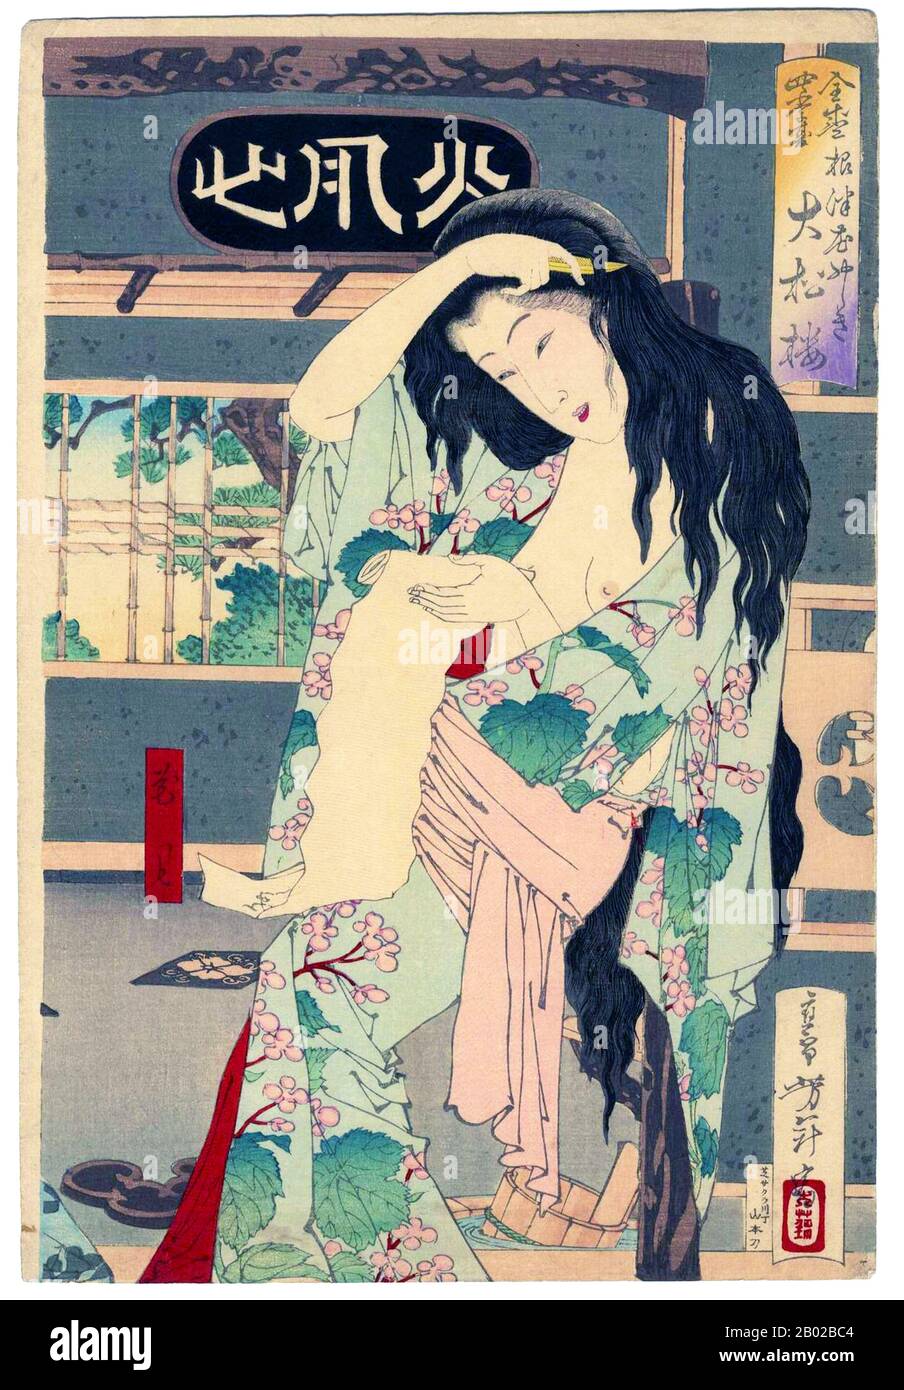 Tsukioka Yoshitoshi (30 avril 1839 – 9 juin 1892) (japonais : 月岡 芳年; également nommé Tiso Yoshitoshi 大蘇 芳年) était un artiste japonais et un maître d'impression de boisés Ukiyo-e. Il est largement reconnu comme le dernier grand maître d'Ukiyo-e, un type d'impression japonaise de blocs de bois. Il est en outre considéré comme l'un des plus grands innovateurs de la forme. Sa carrière a duré deux périodes – les dernières années de la période Edo Japon, et les premières années du Japon moderne après la restauration Meiji. Comme beaucoup de Japonais, Yoshitoshi était intéressé par de nouvelles choses du reste du monde, mais avec le temps il est devenu de plus en plus concerne Banque D'Images